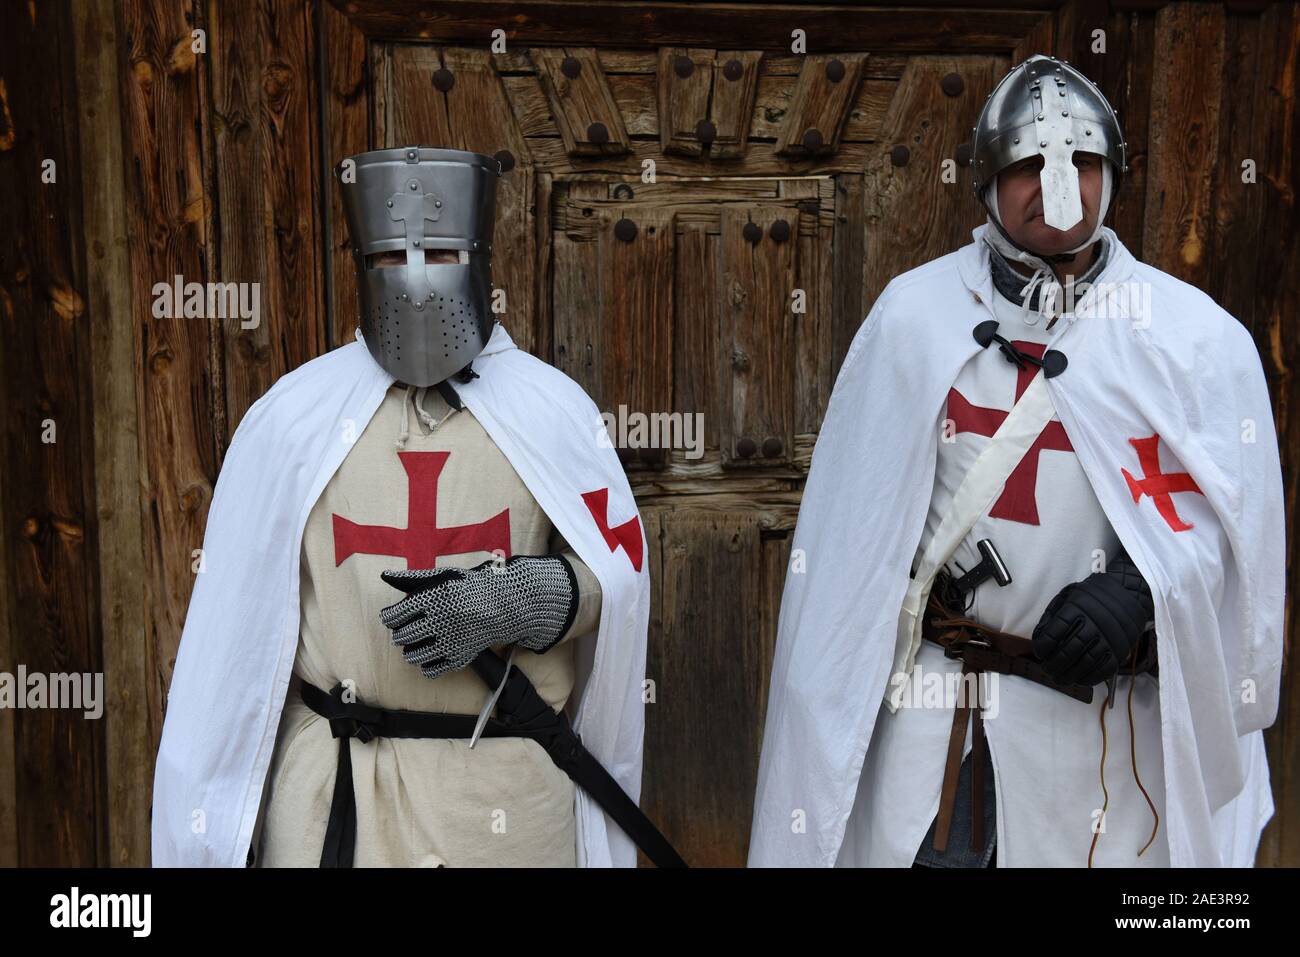 Hombres vestidos como templarios durante una re-Promulgación.La iglesia católica de orden militar de los Templarios (Caballeros Templarios) fue fundada por el noble francés Hugo de Payens en Jerusalén alrededor de 1119.